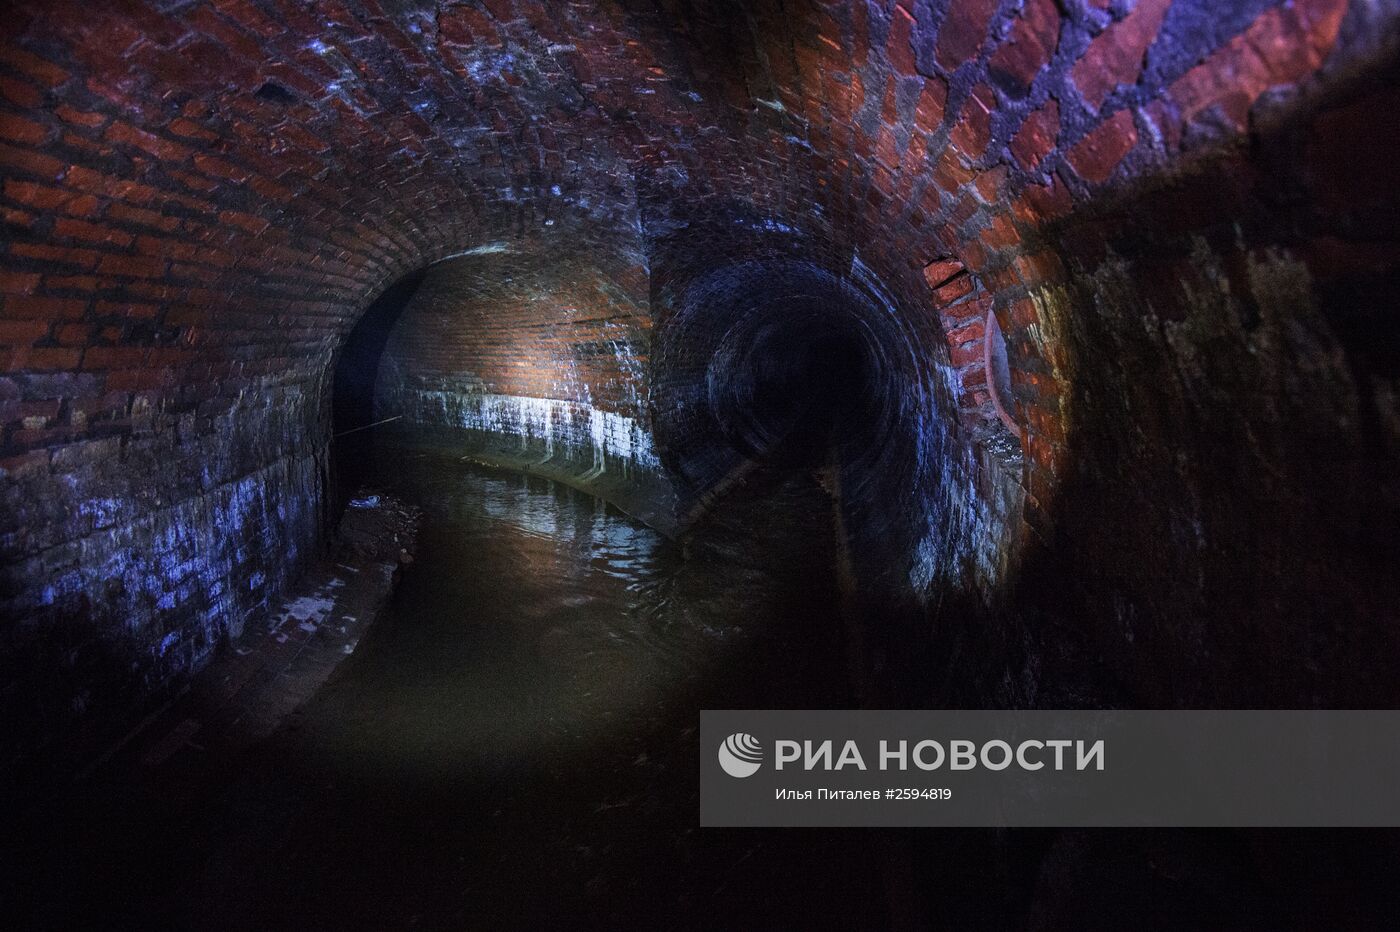 Коллектор реки Неглинки в Москве